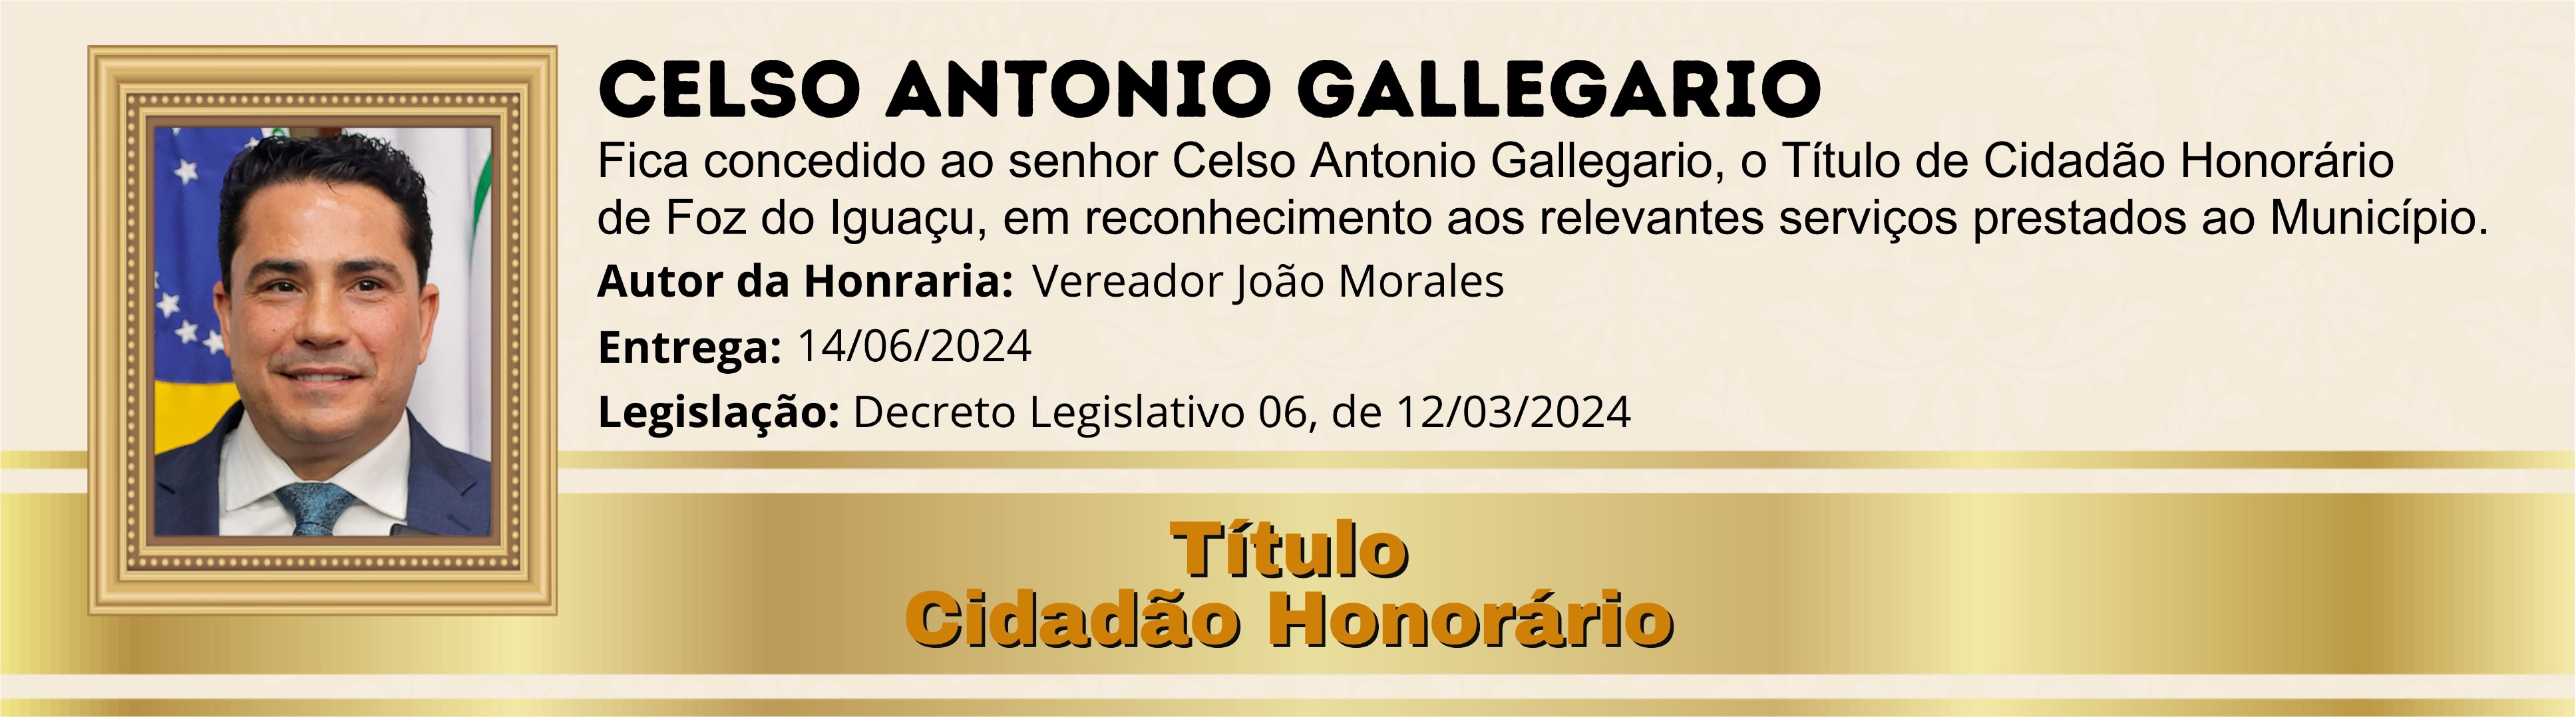 Celso Antonio Gallegario